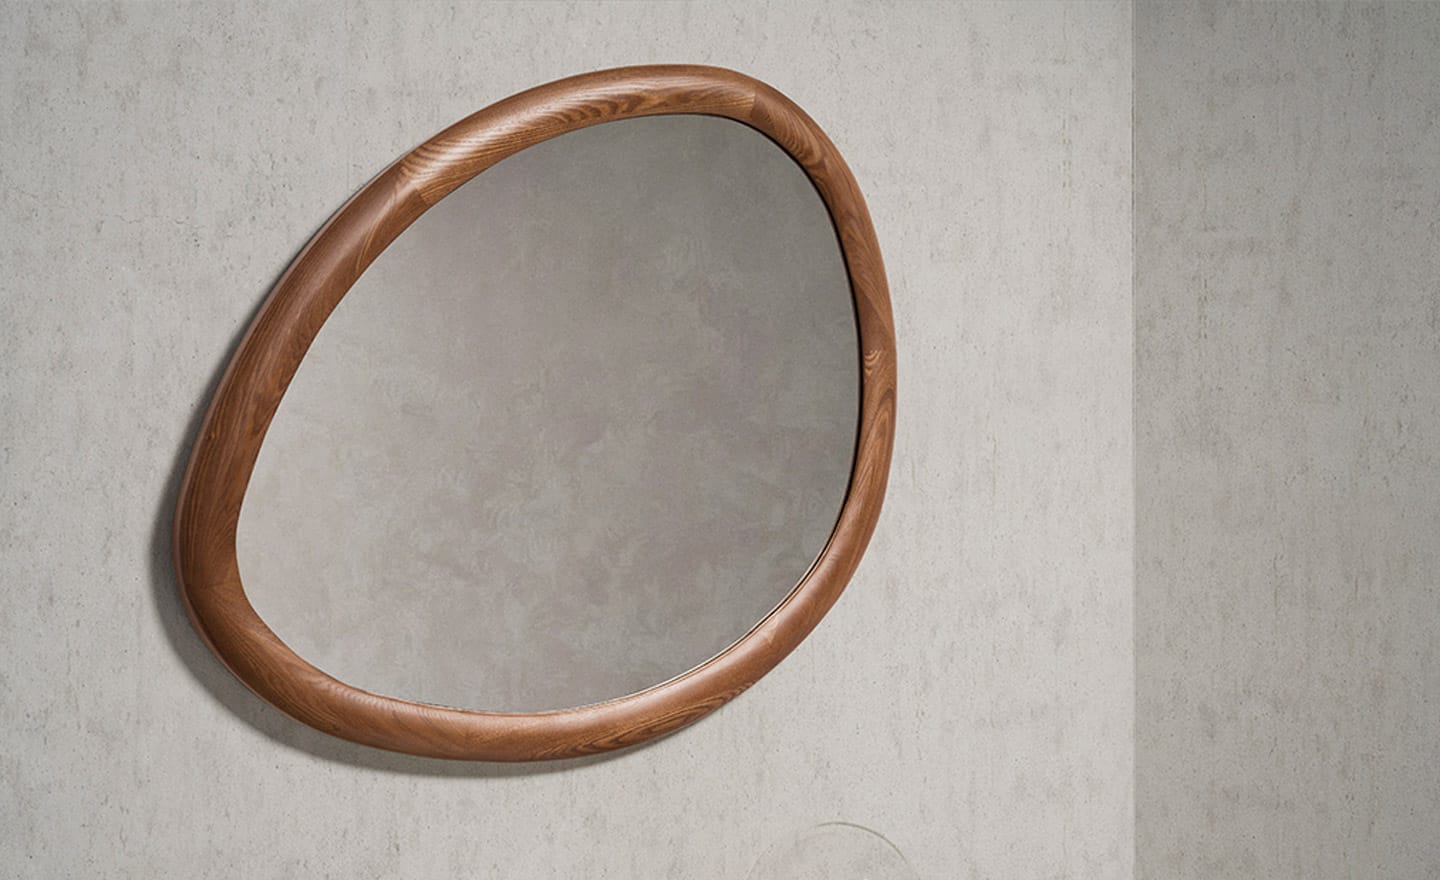 Espelho de Parede Orgânico Nogueira - Design Moderno para Elegância e Luminosidade | Moveistore